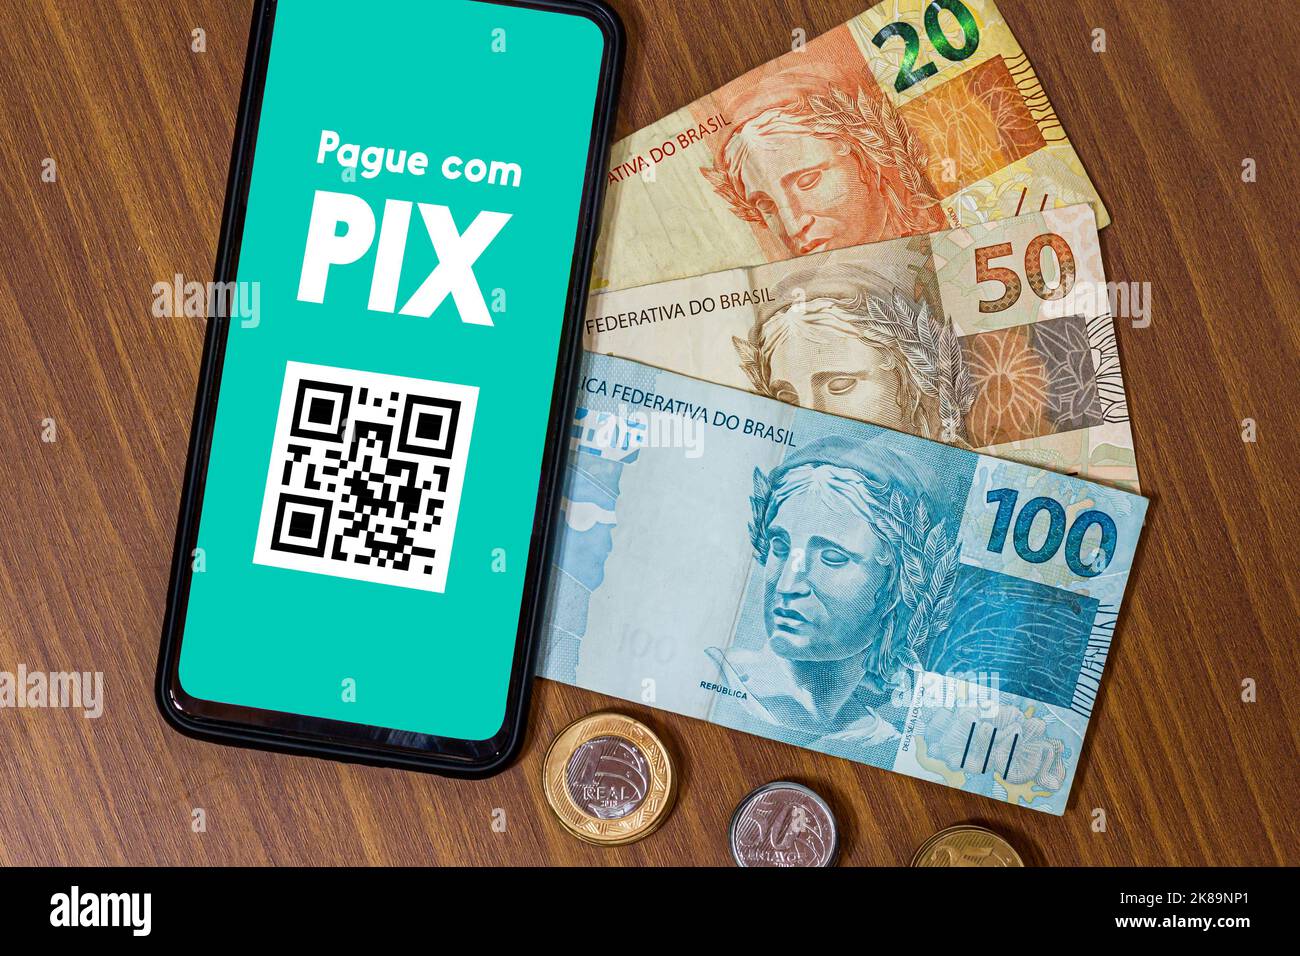 PIX sur l'écran du smartphone avec plusieurs pièces. PIX est le nouveau système de paiement et de transfert des gouvernements brésilien et brésilien Banque D'Images